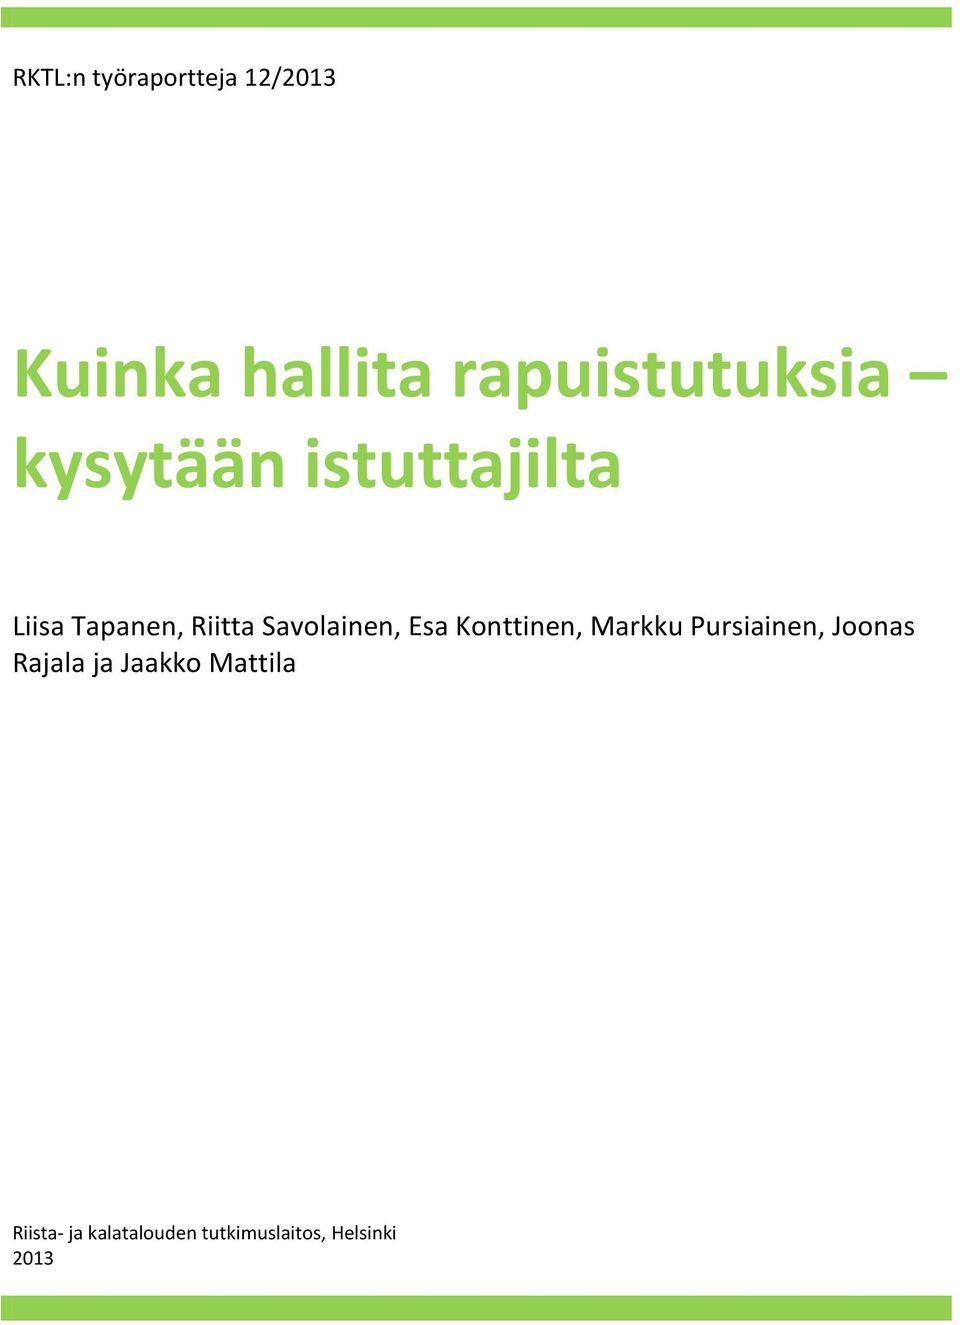 Markku Pursiainen, Joonas Rajala ja Jaakko Mattila